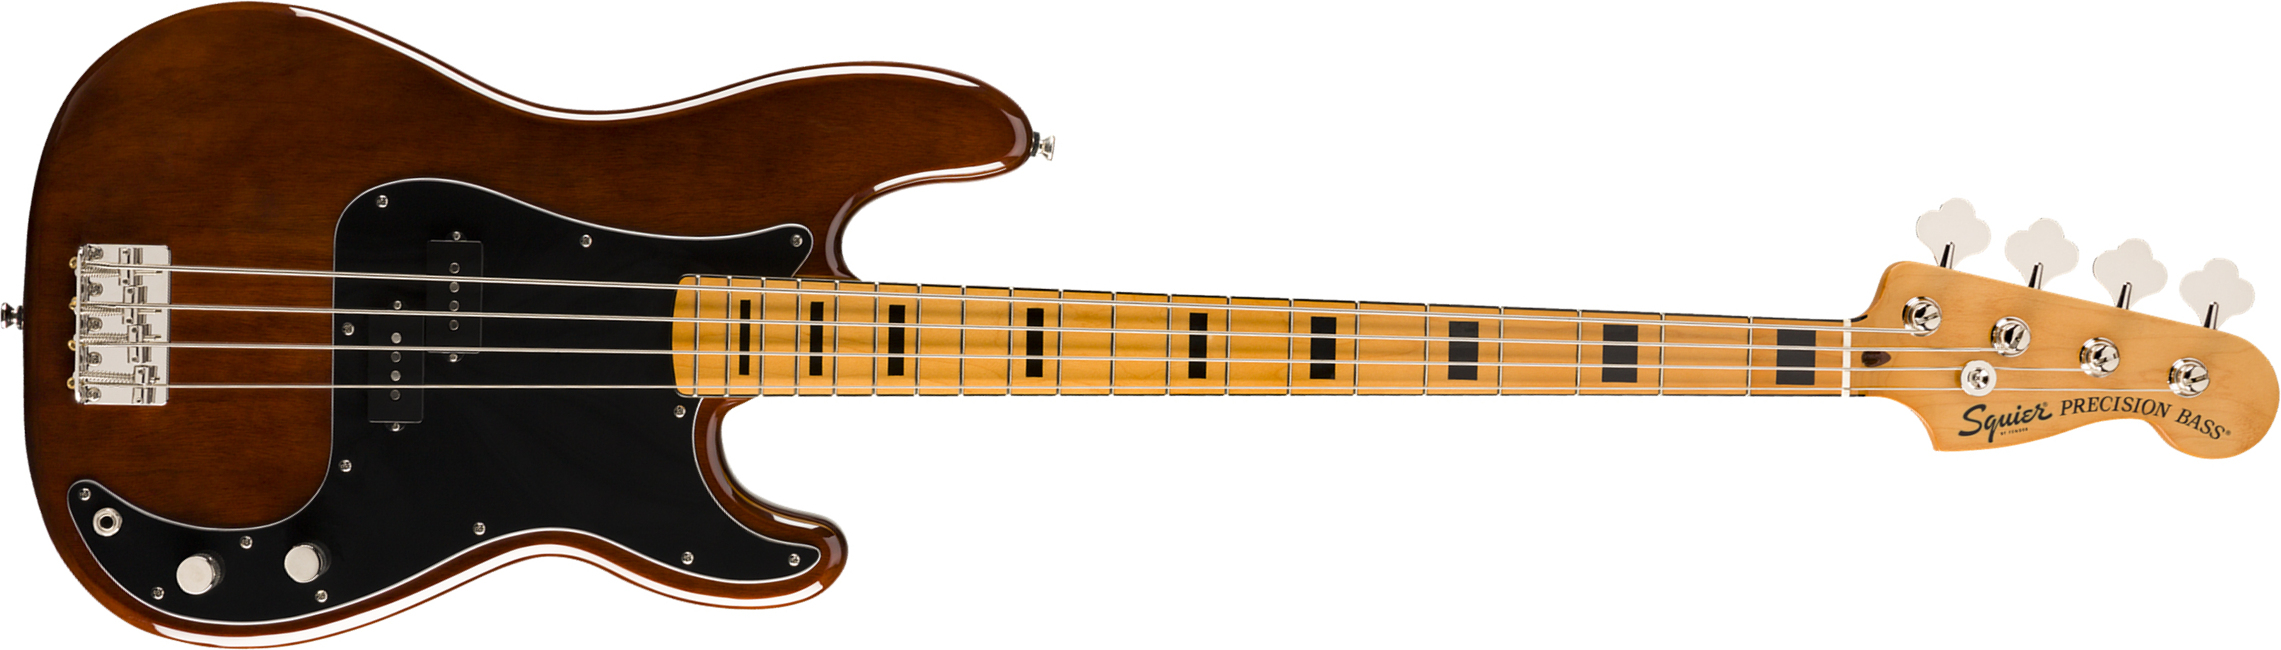 Squier Precision Bass '70s Classic Vibe 2019 Mn - Walnut - Bajo eléctrico de cuerpo sólido - Main picture